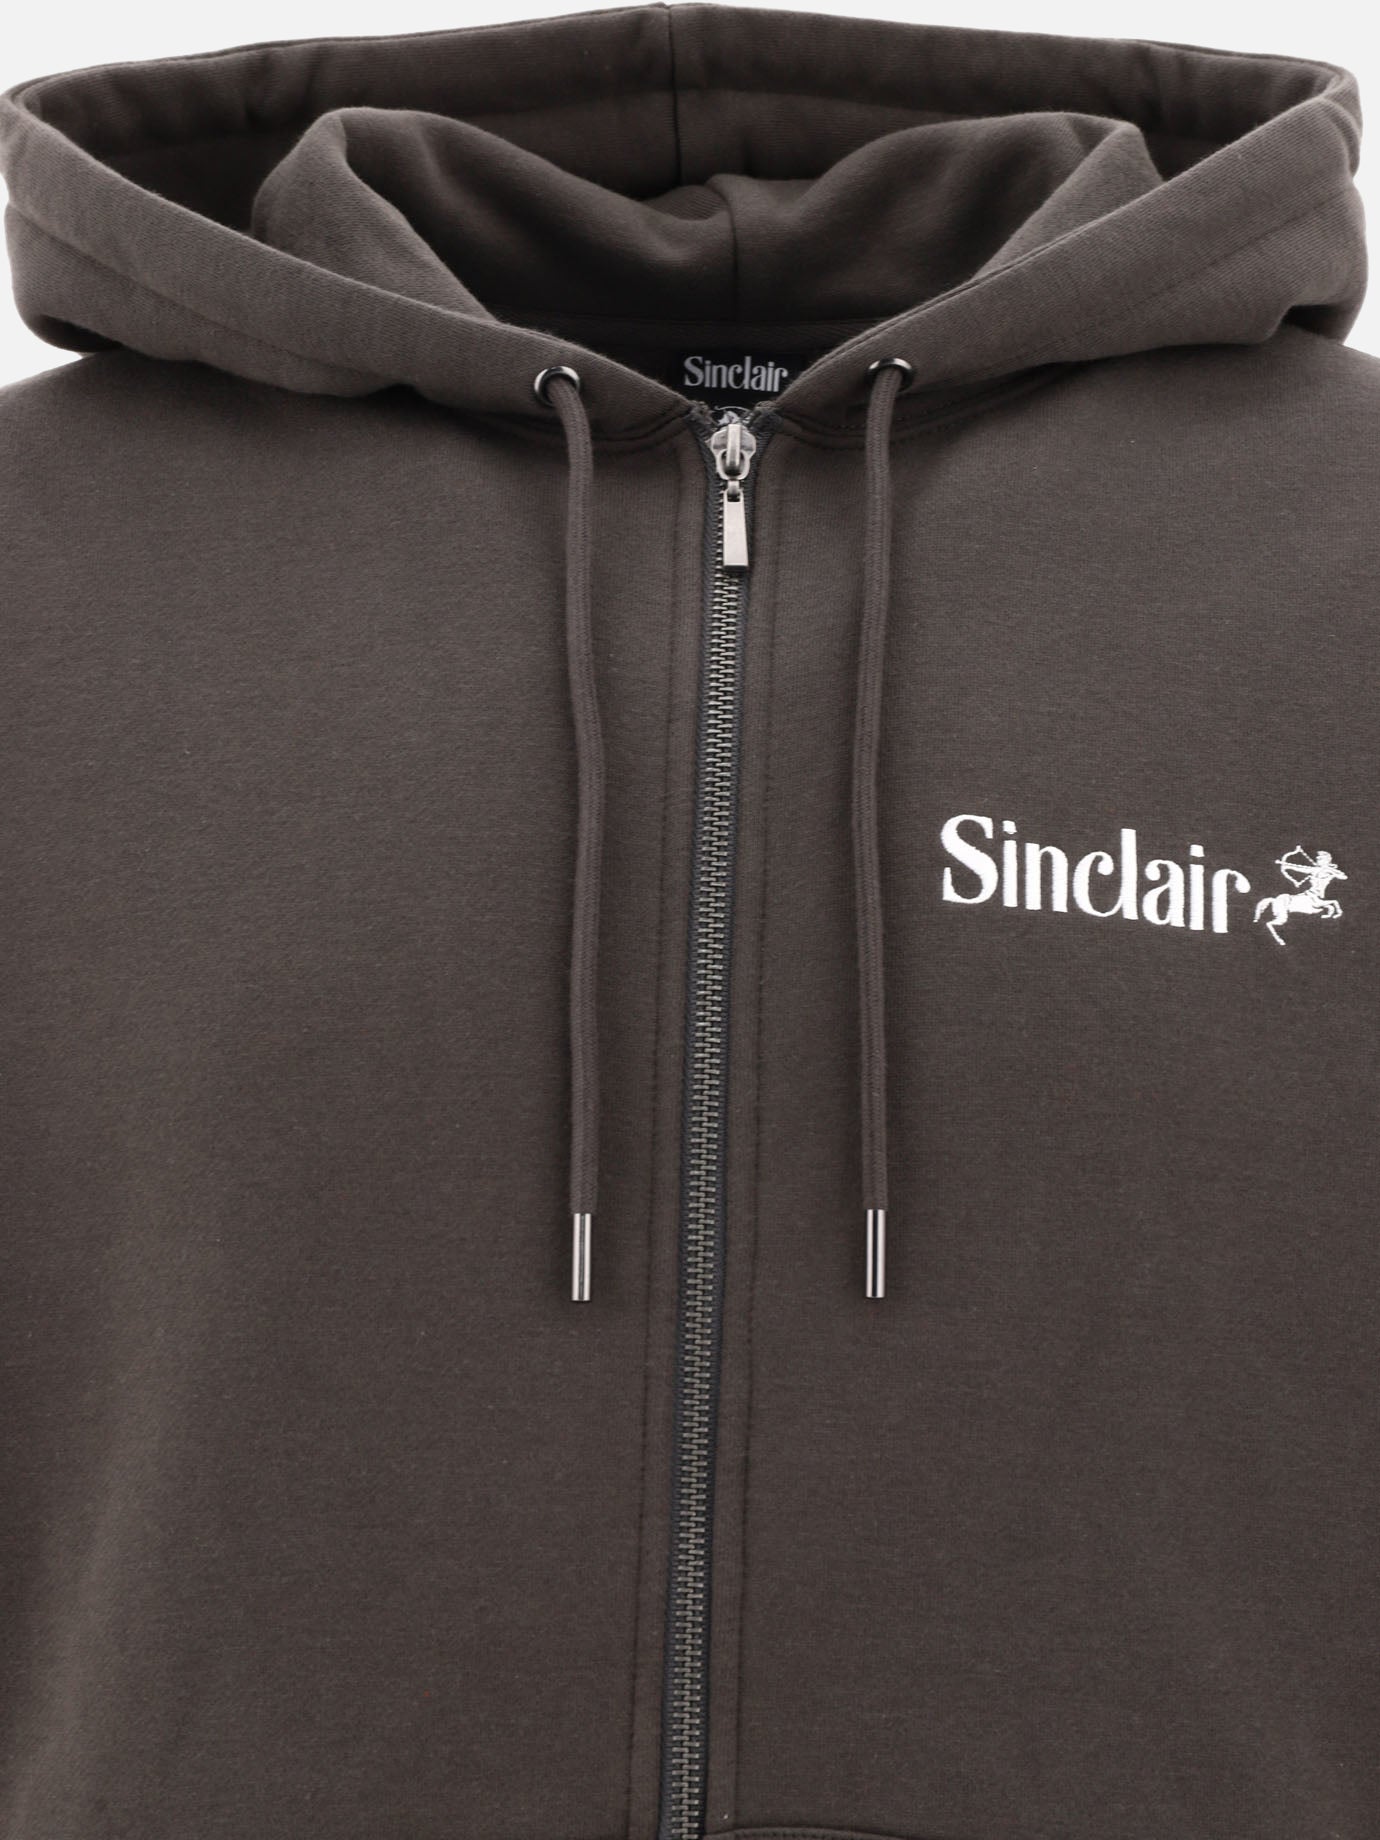 "Sagittarius" zipped hoodie